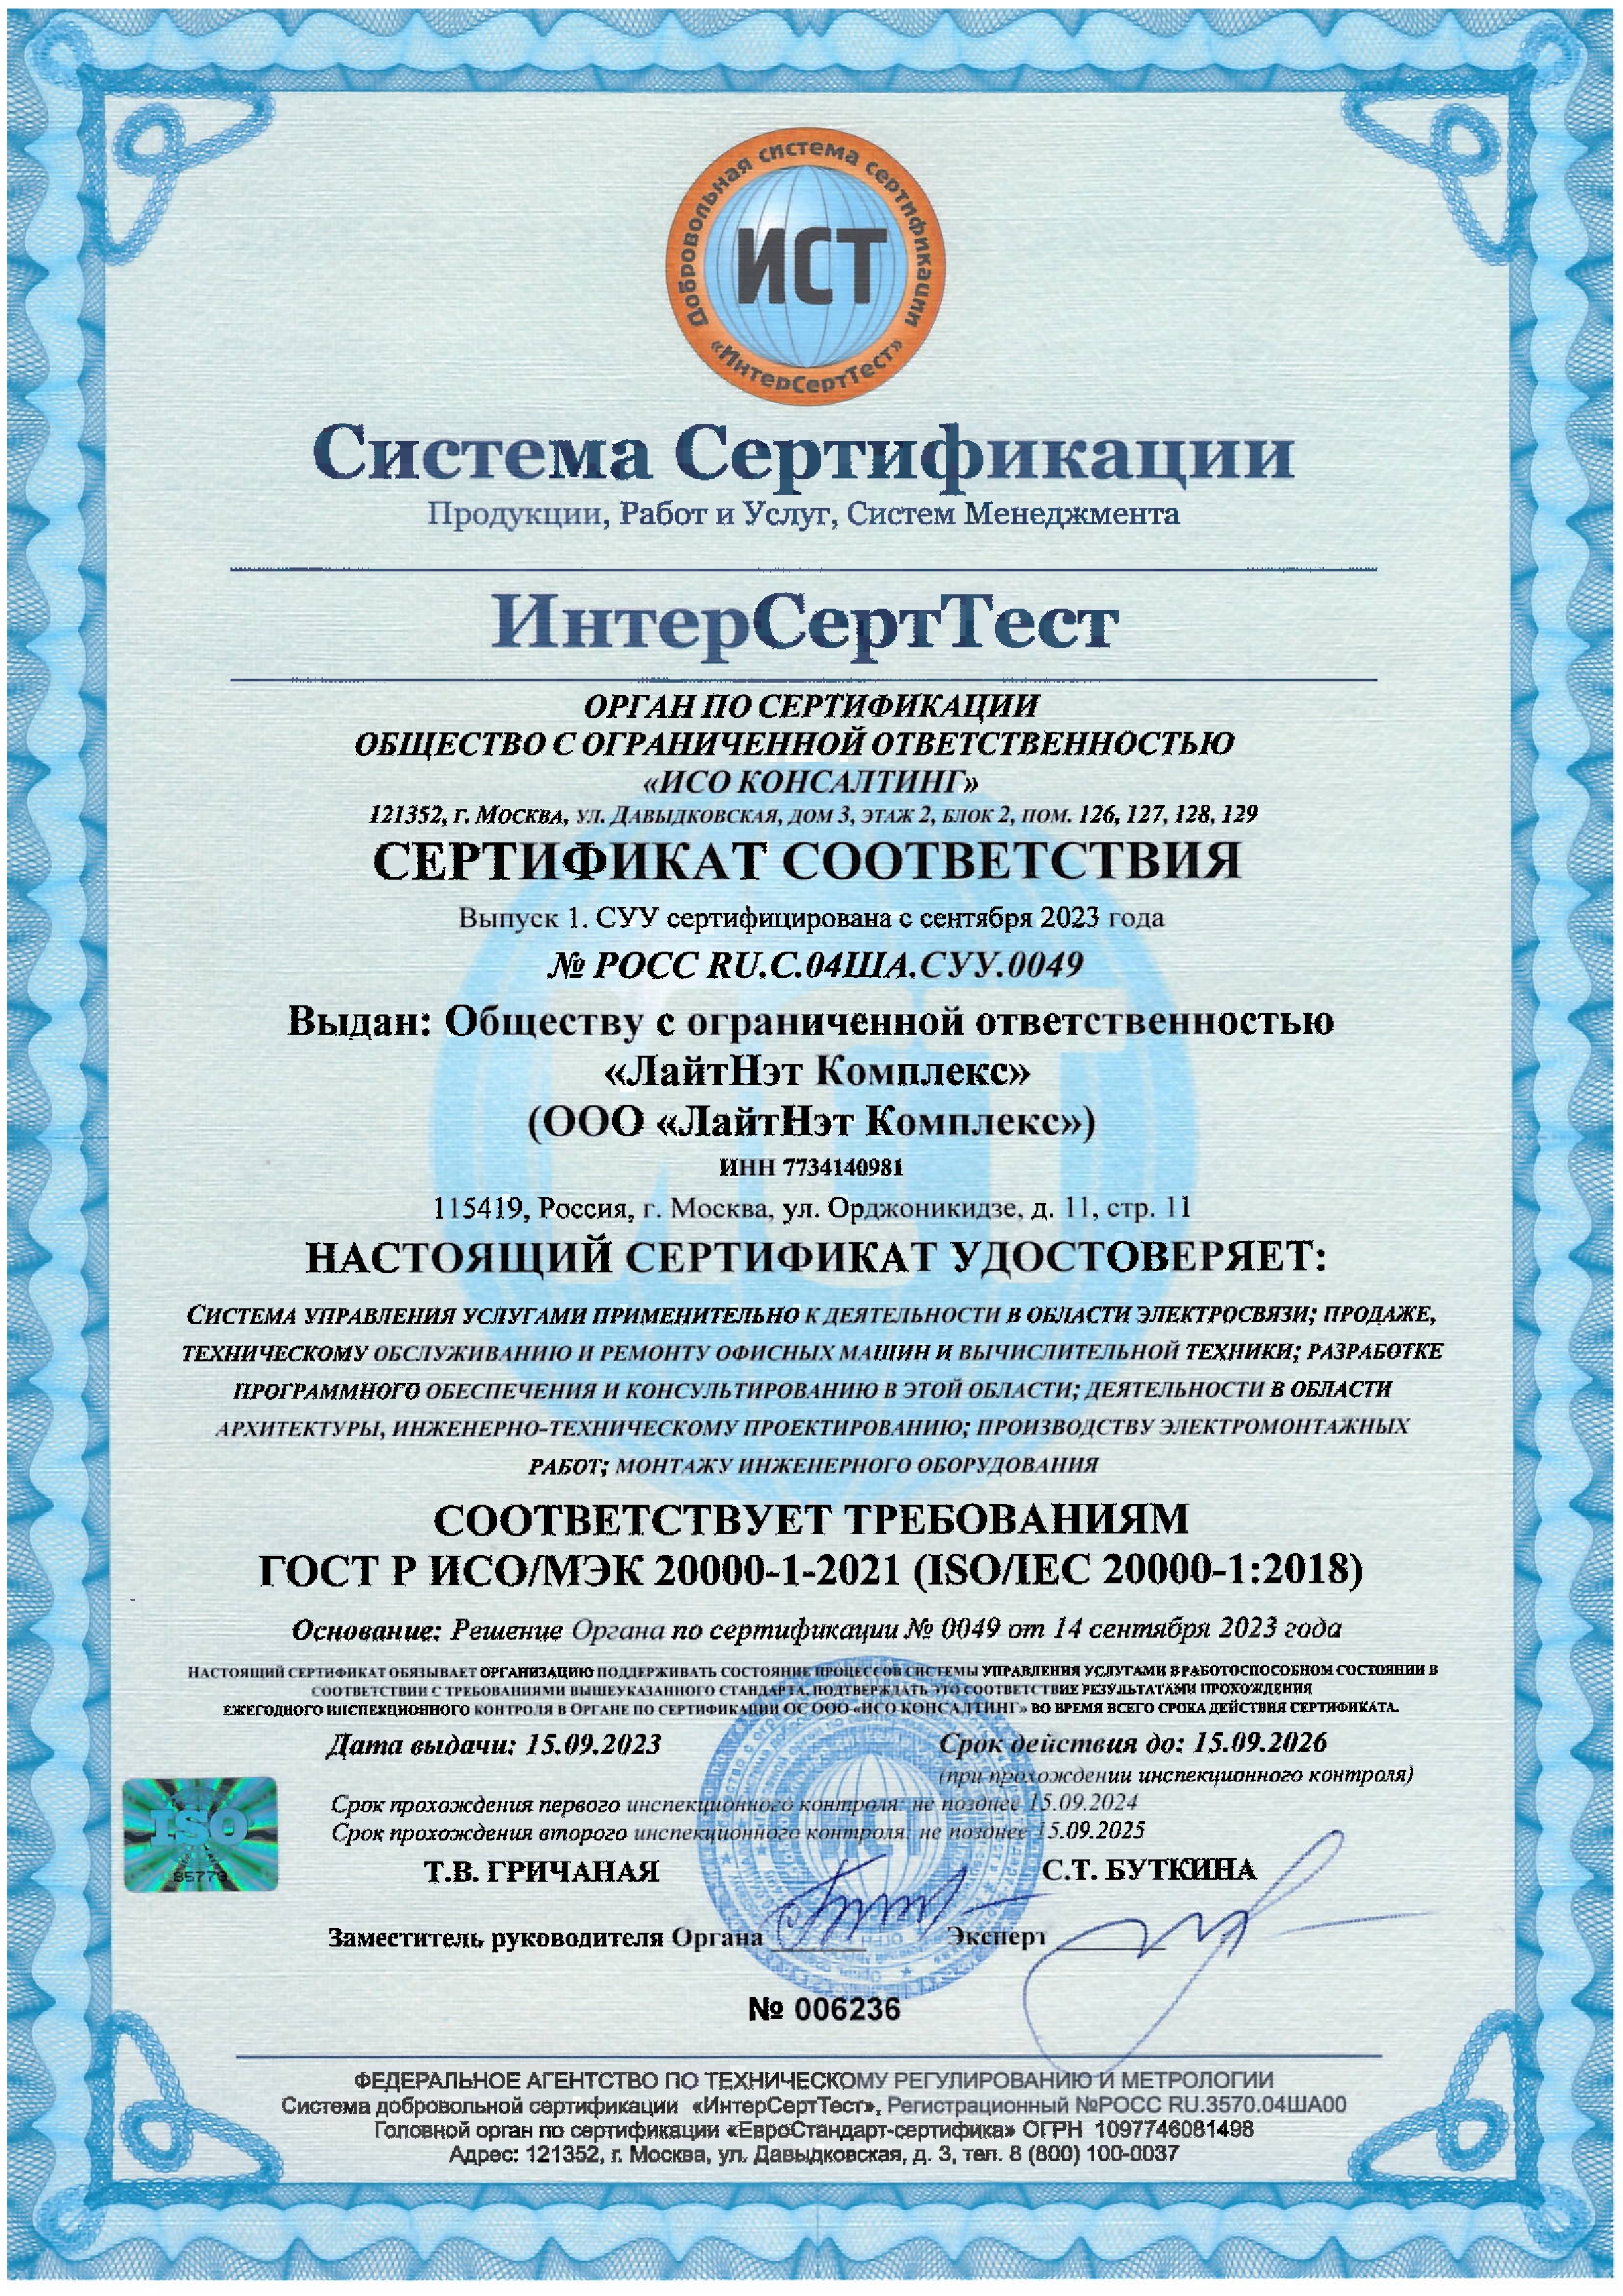 Сертификат соответствия системы управления ИТ сервисами стандарту ГОСТ Р ИСО/МЭК 20000-1-2021